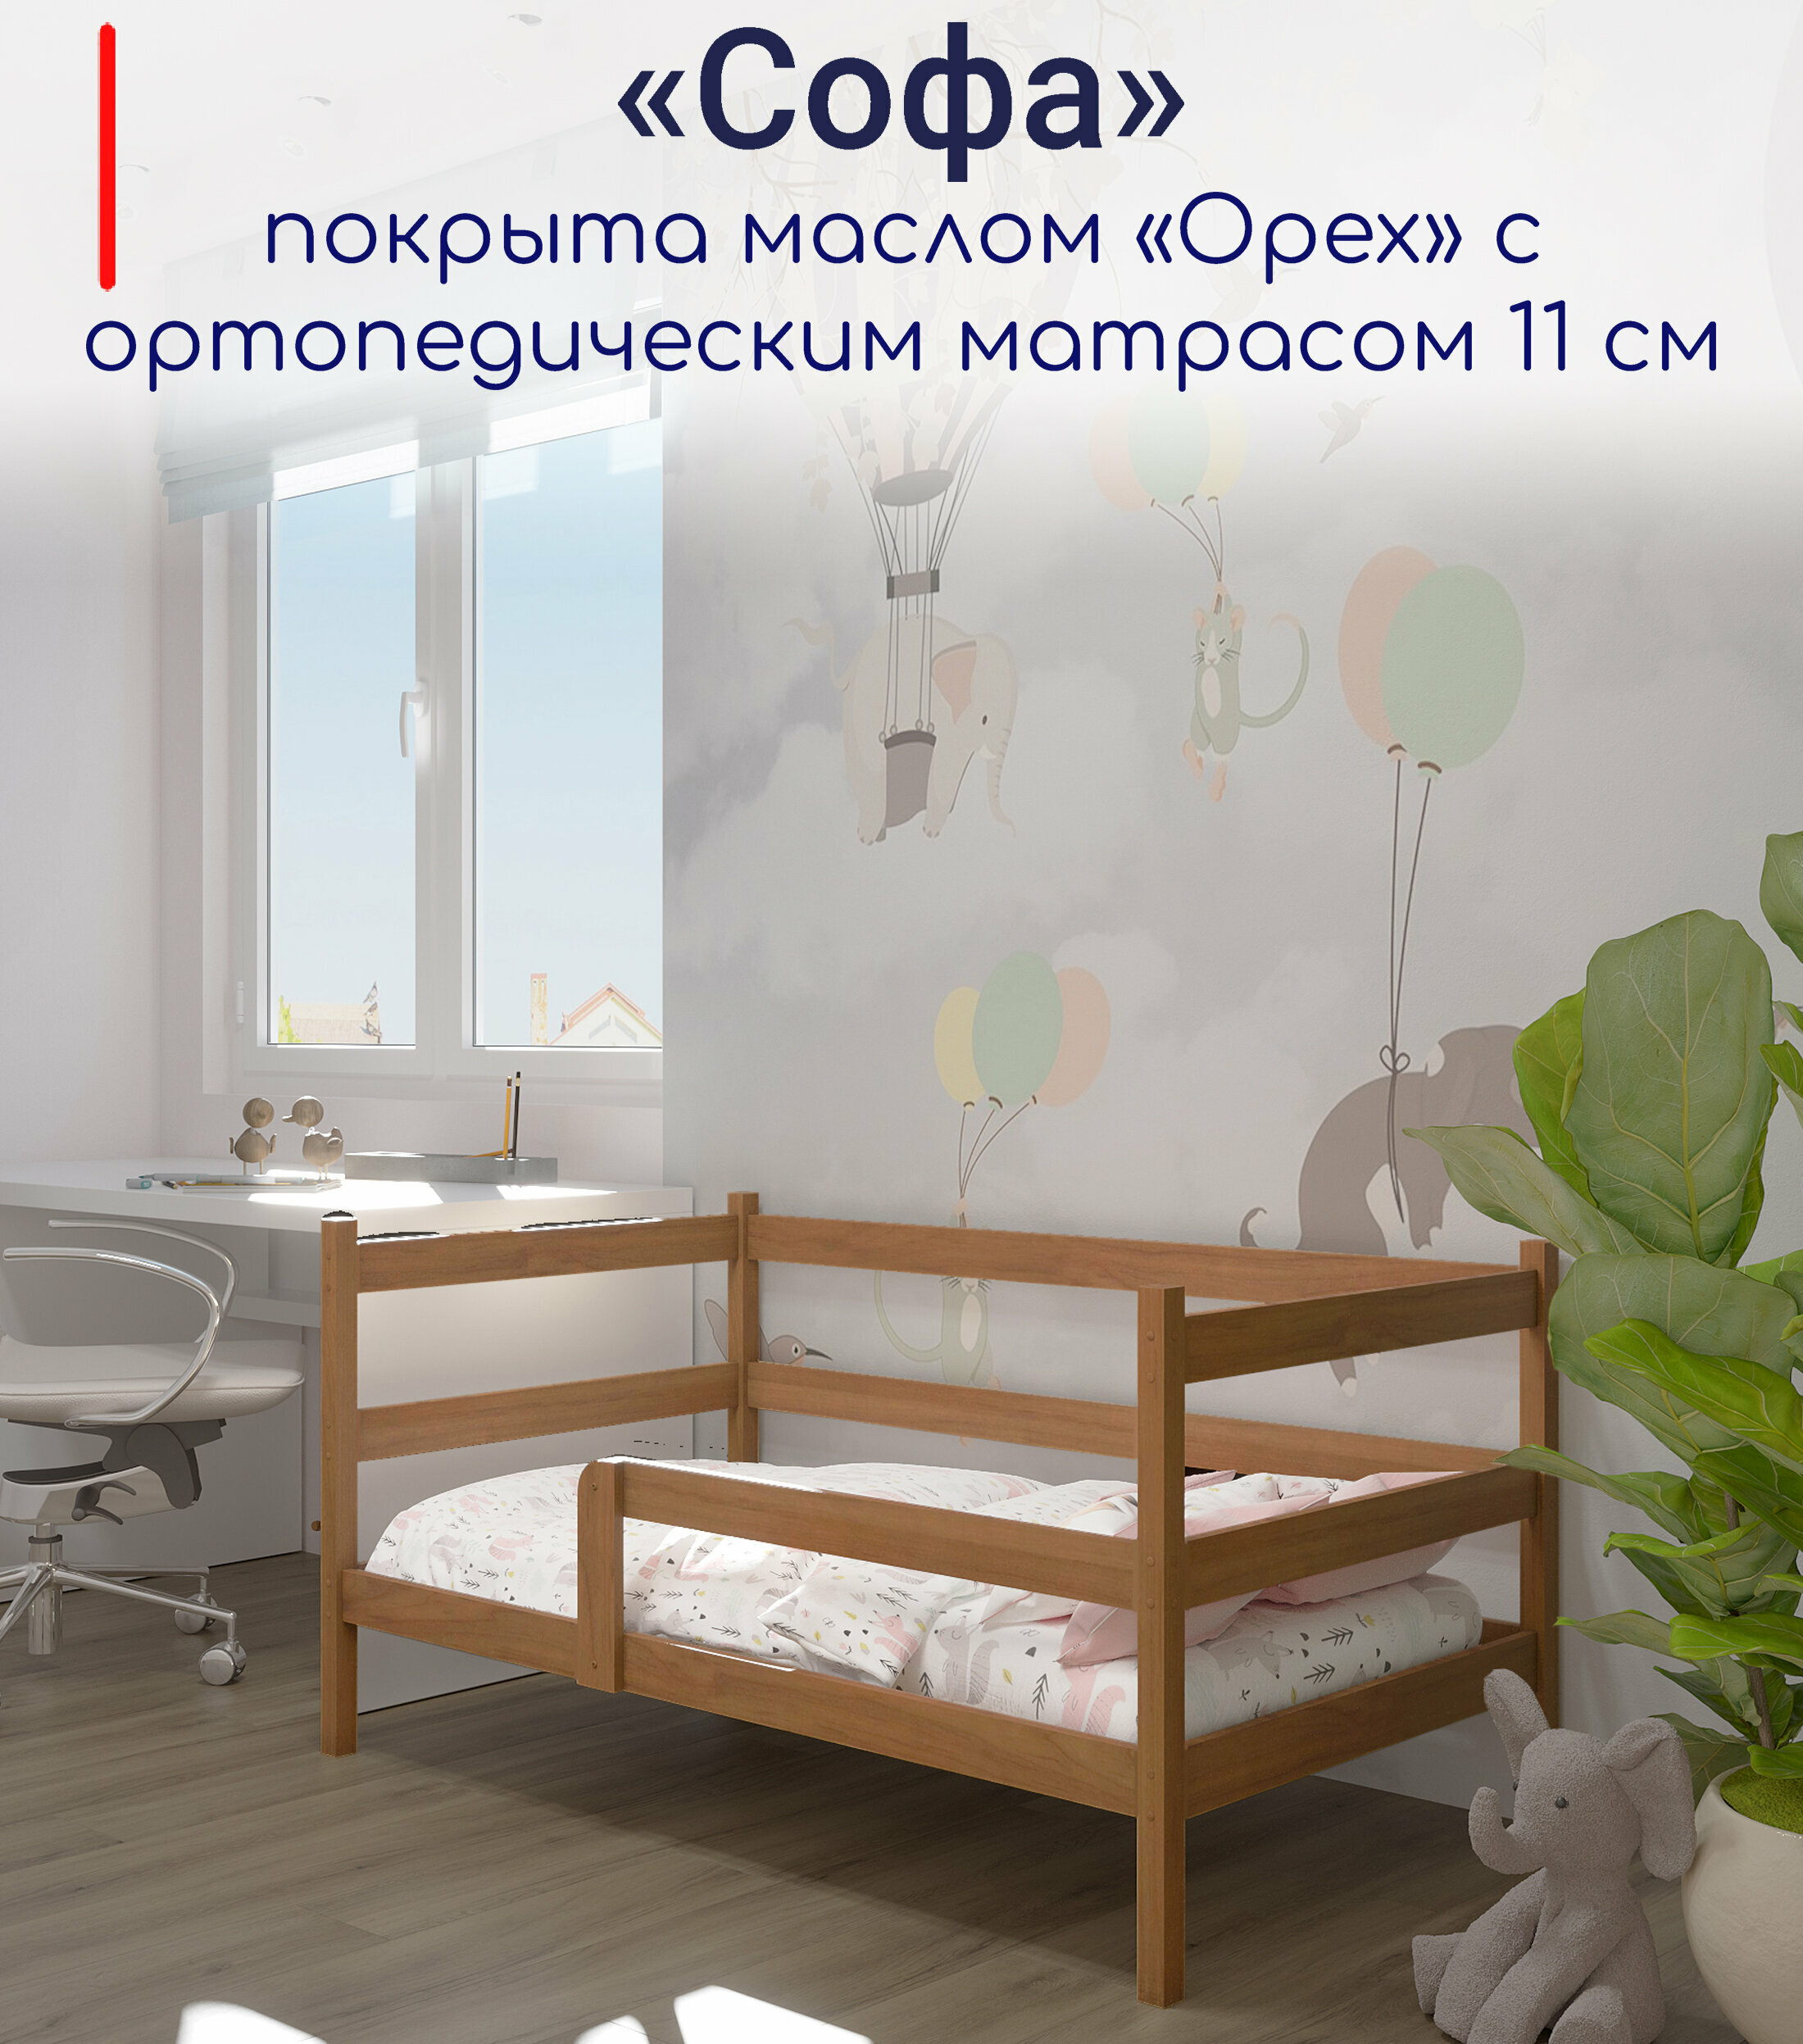 Кровать детская, подростковая "Софа", спальное место 180х90, в комплекте с ортопедическим матрасом, масло "Орех", из массива